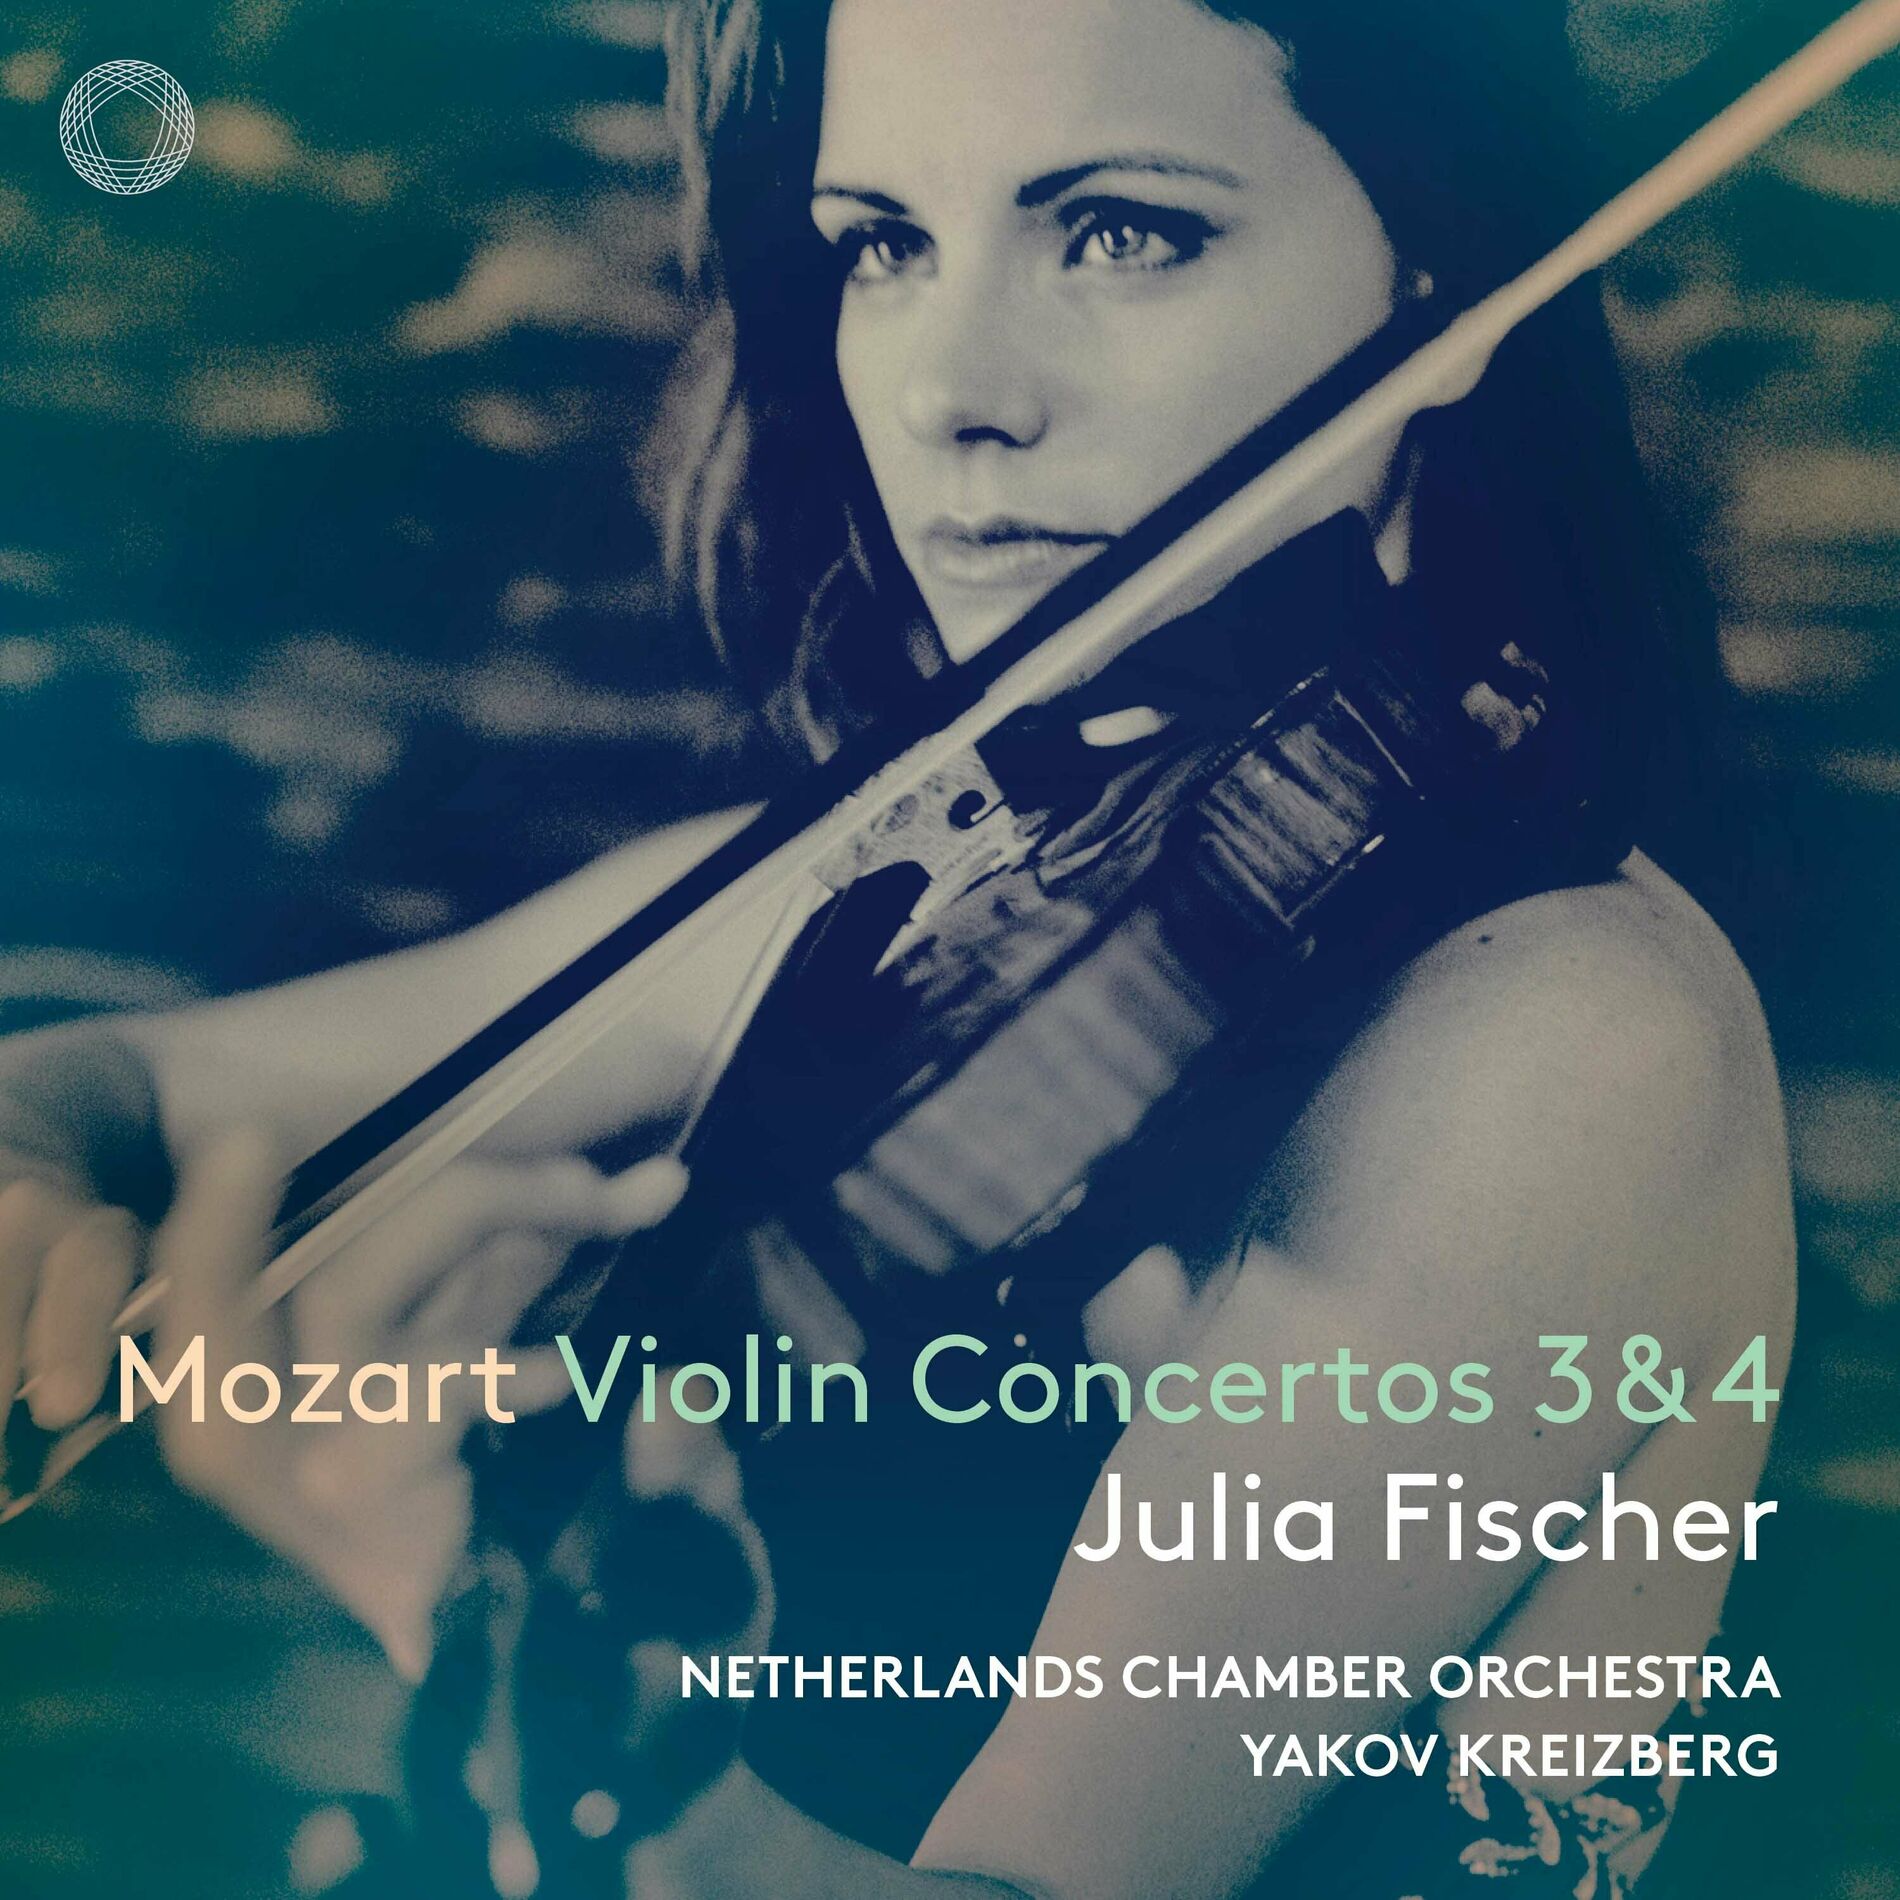 Julia Fischer: albums, songs, playlists | Listen on Deezer